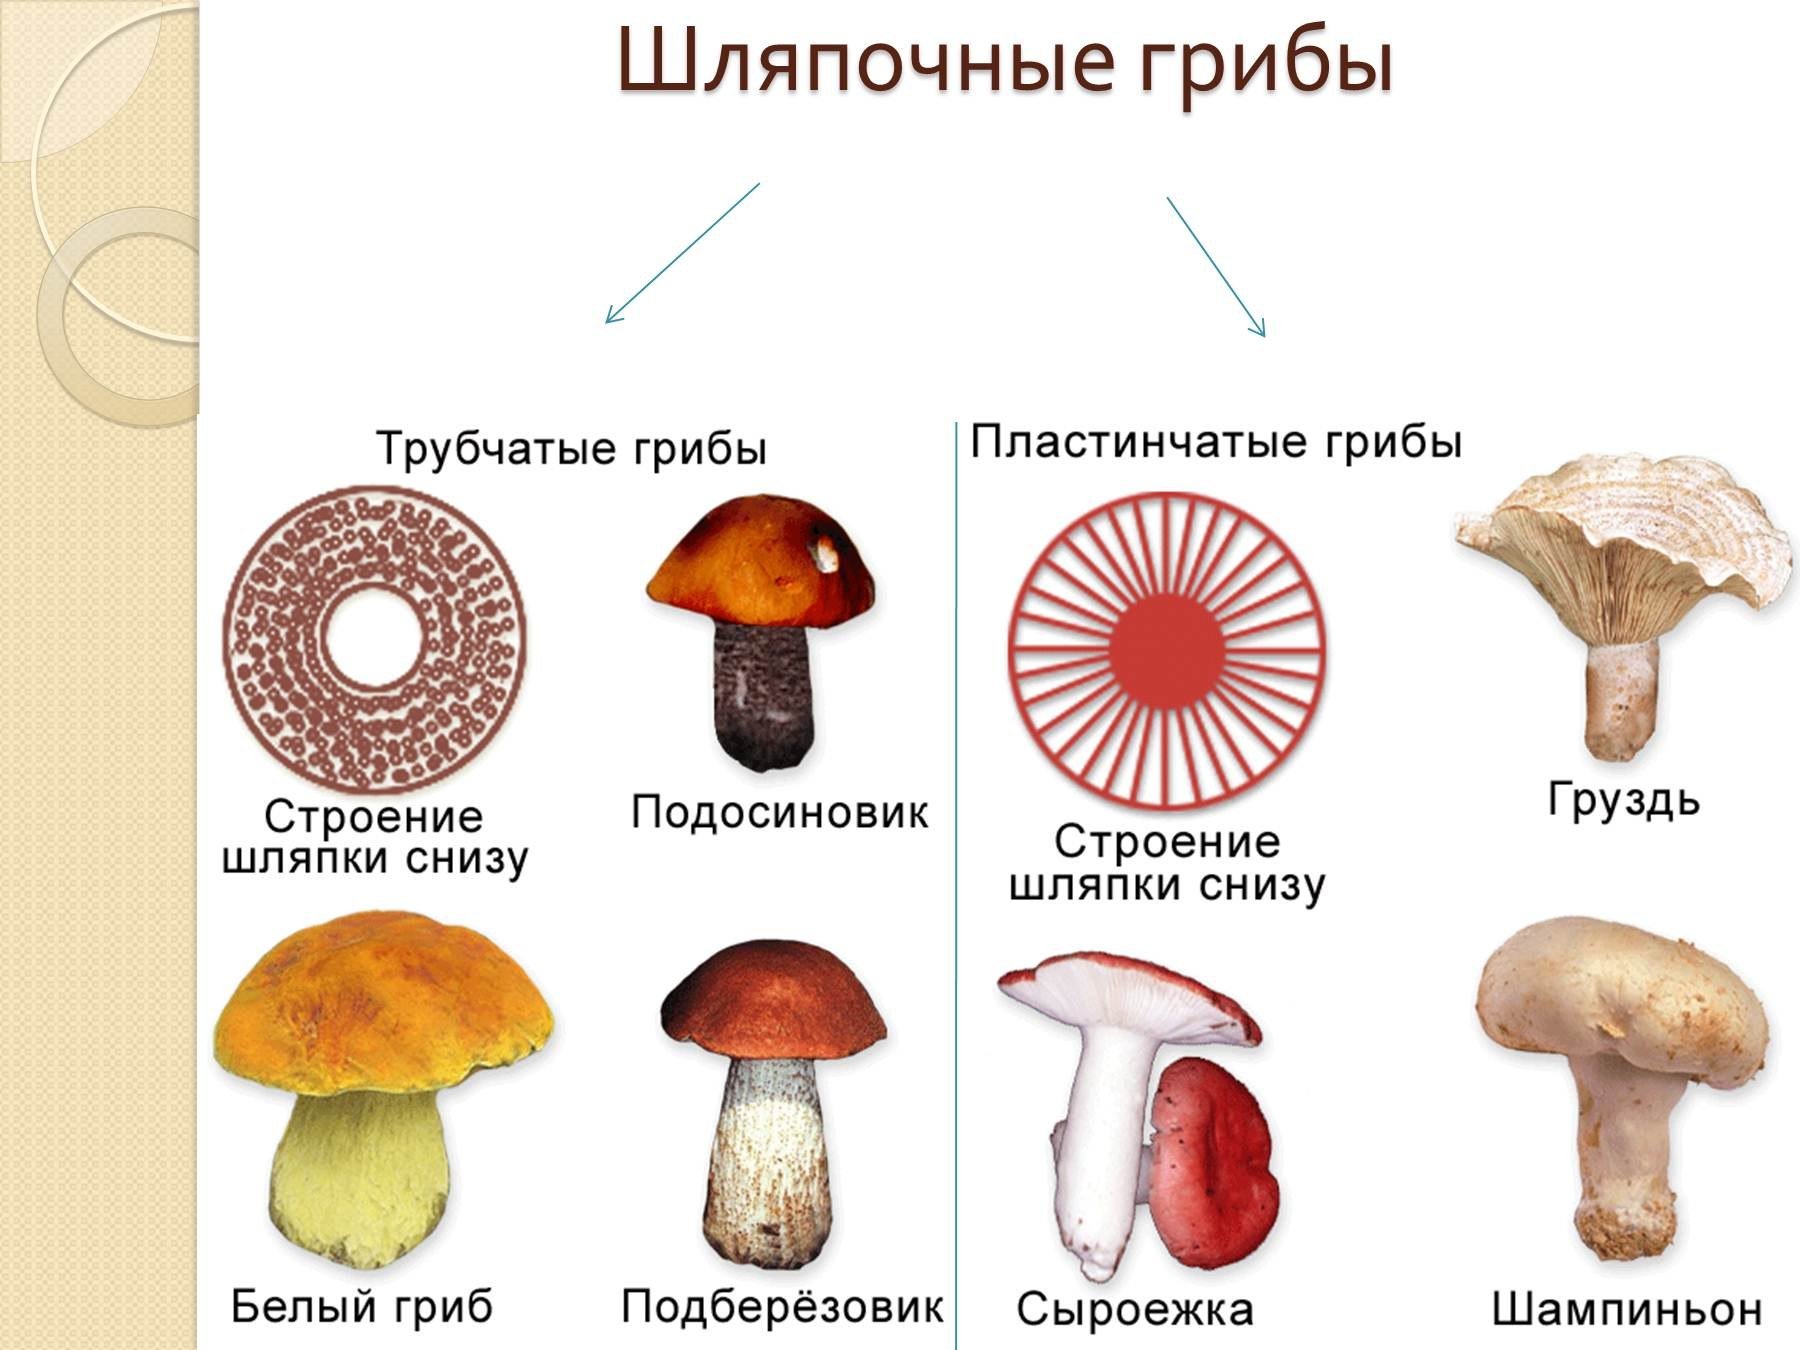 К шляпочным грибам относят. Шляпочные грибы трубчатые и пластинчатые грибы. Шляпочные грибы трубчатые и пластинчатые. Представители шляпочных грибов 5 класс. Несъедобные Шляпочные грибы.